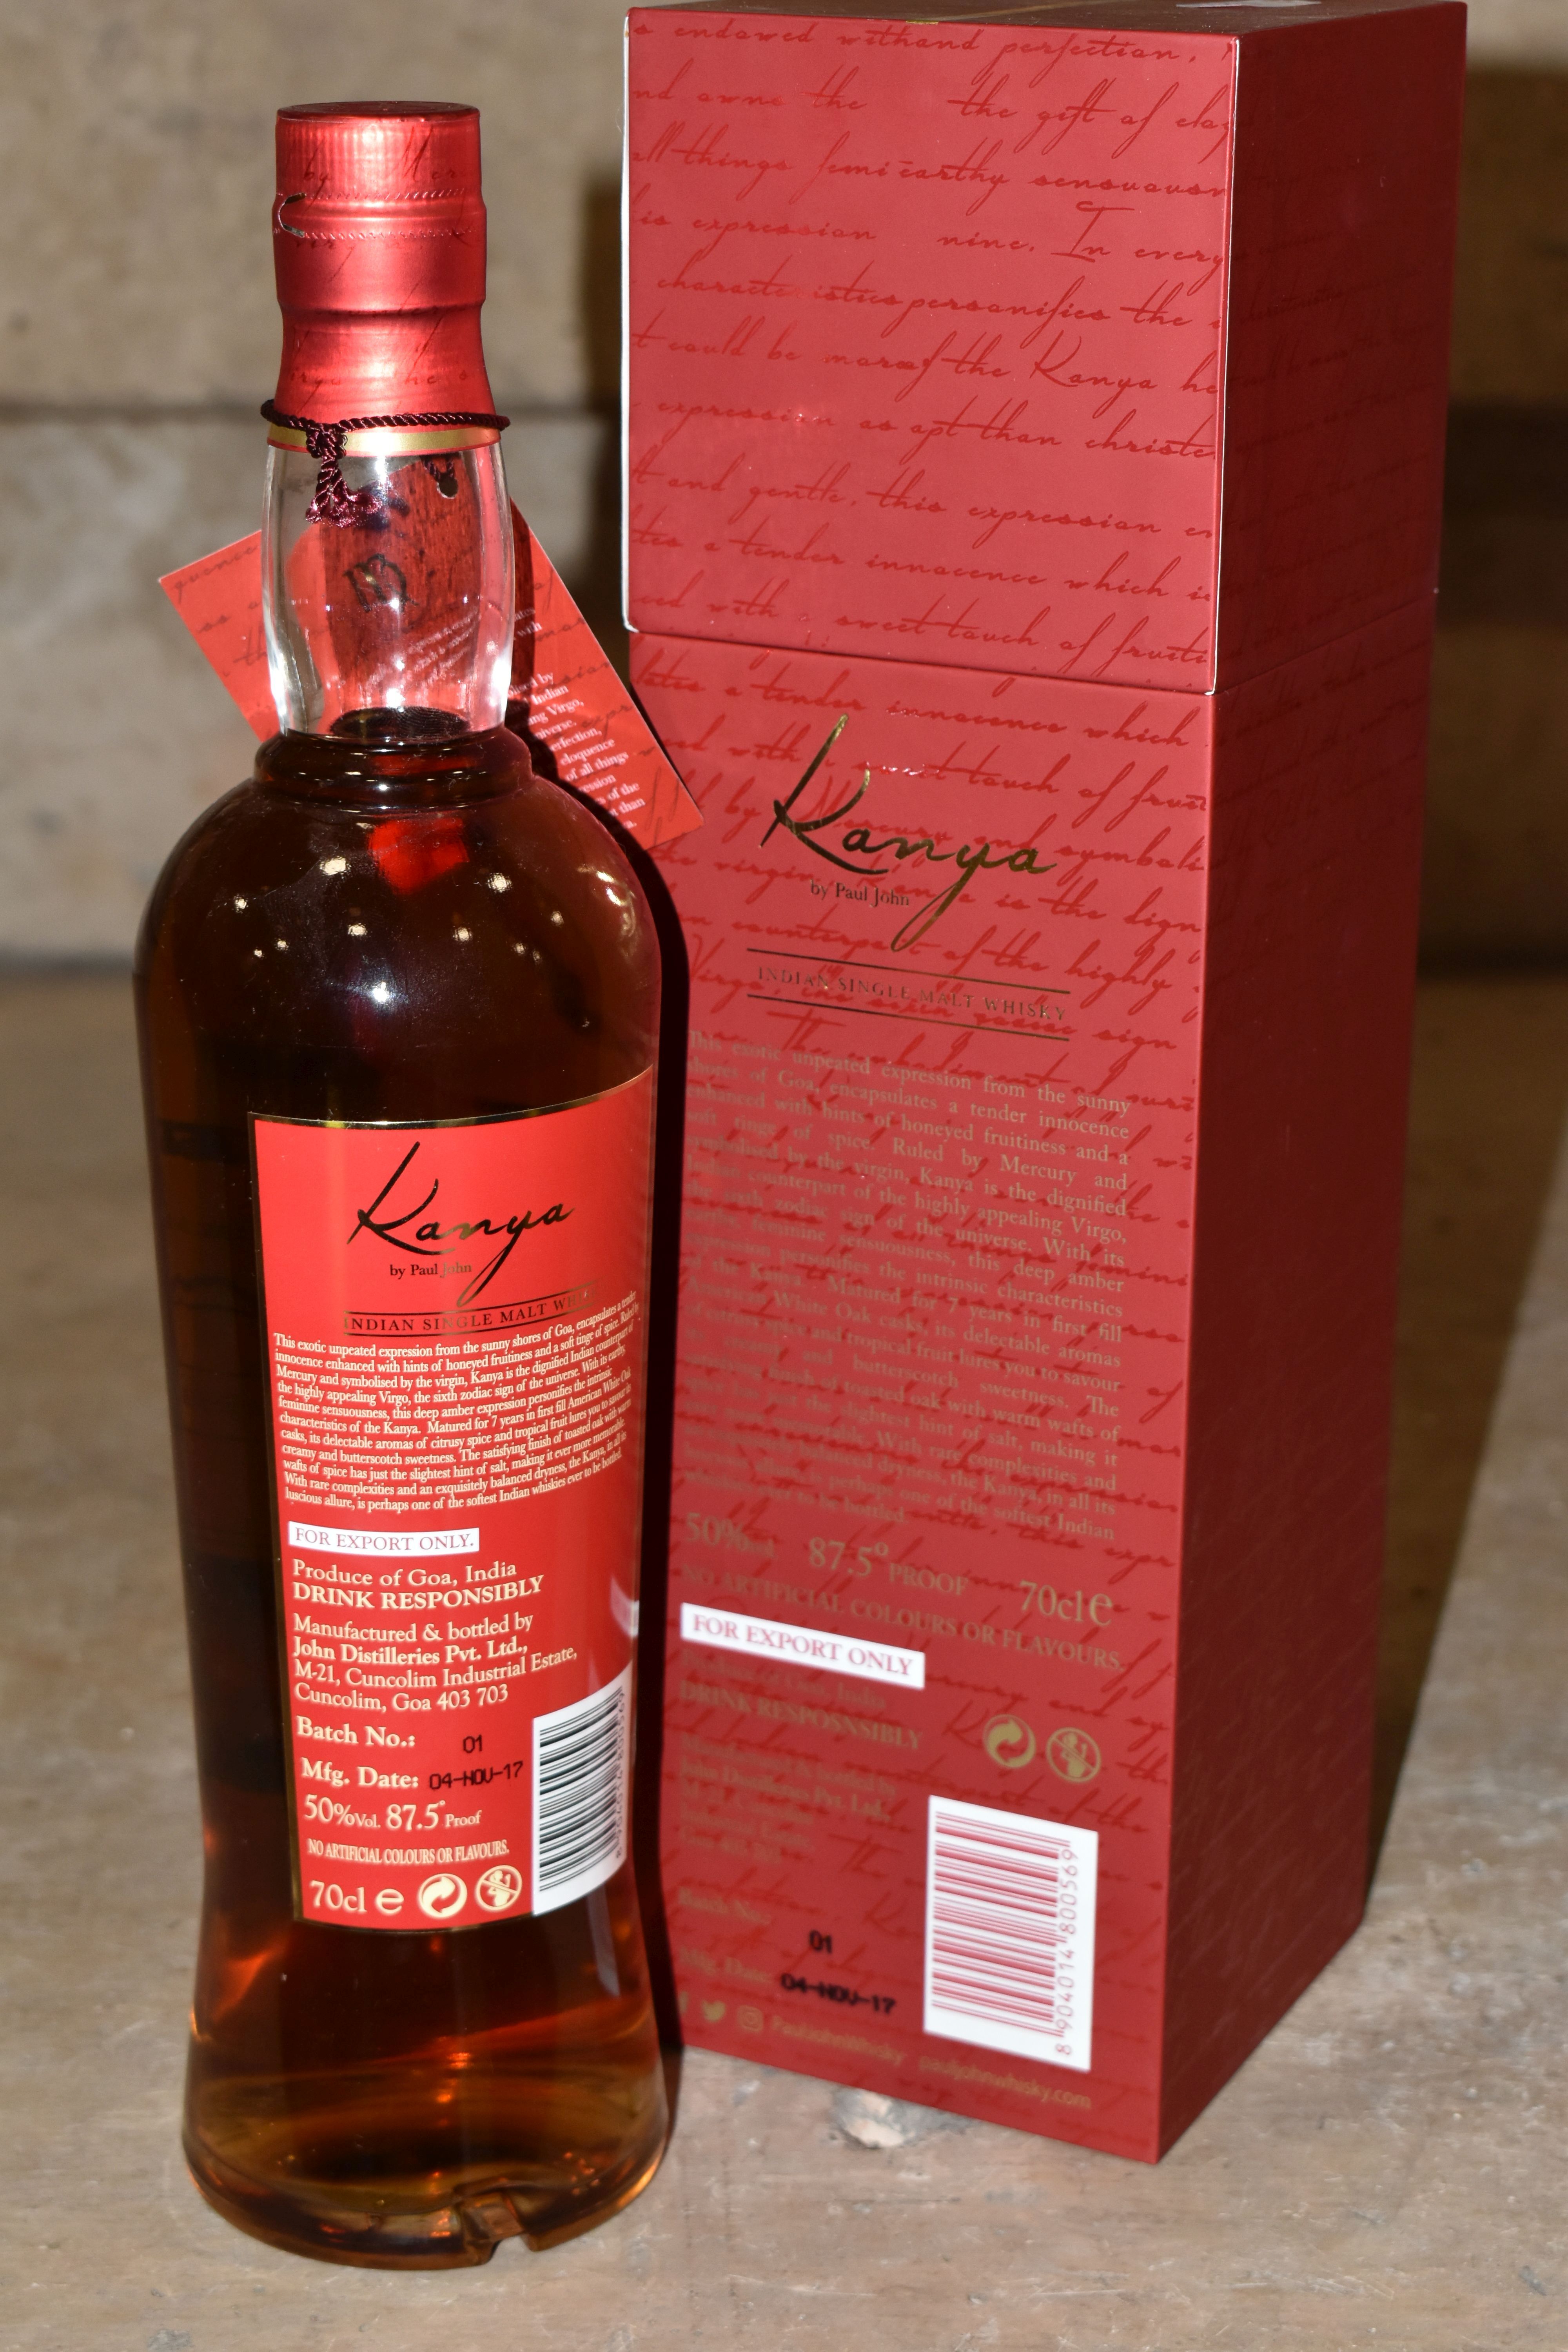 ONE BOTTLE OF RARE SINGLE MALT, KANYA by Paul John, Indian Single Malt Whisky, matured for 7 years - Image 3 of 6